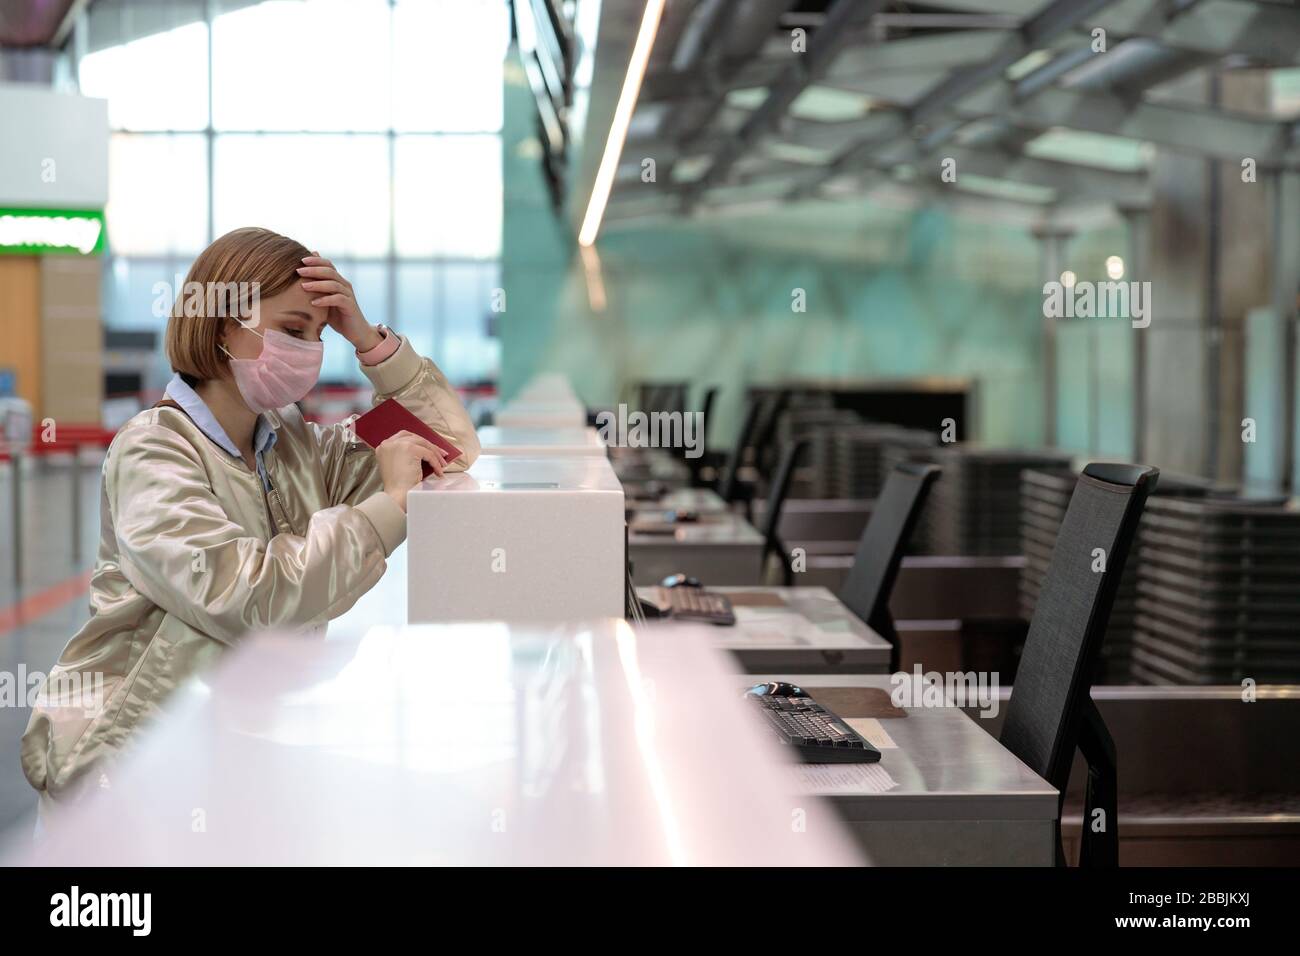 Frau mit Gepäck über Flugannullierung, steht an leeren Check-in-Schaltern am Flughafenterminal wegen Coronavirus-Pandemie/Covid-19-Ausbruch Trave Stockfoto